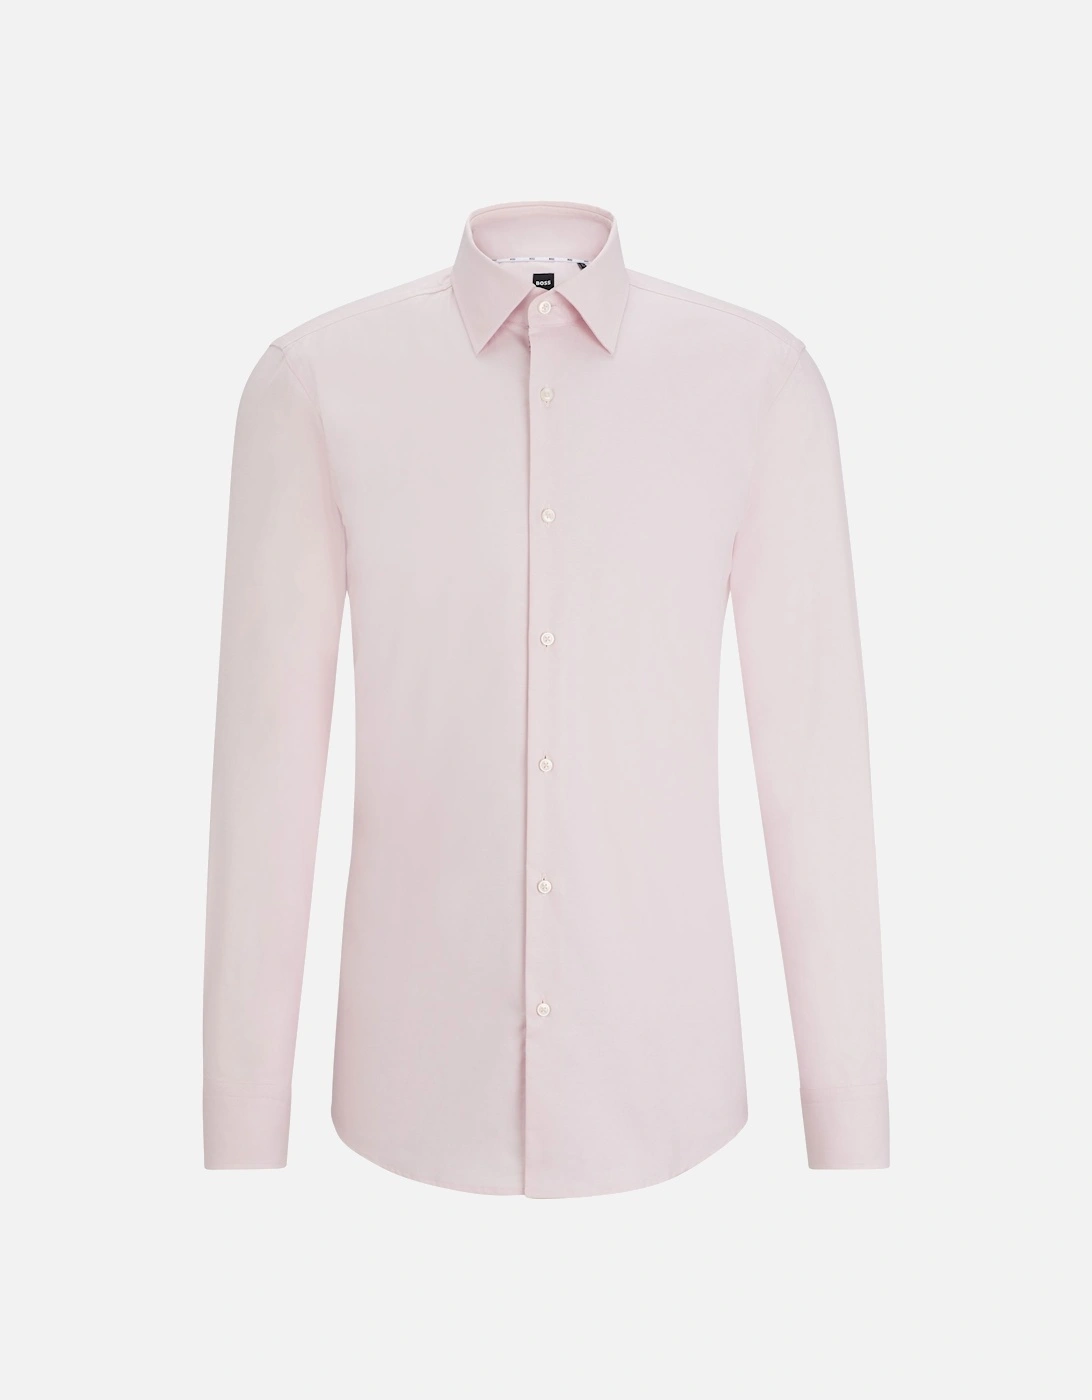 Boss H-hank-kent-c6-242 Long Sleeved Shirt Light Pastel Pink, 5 of 4